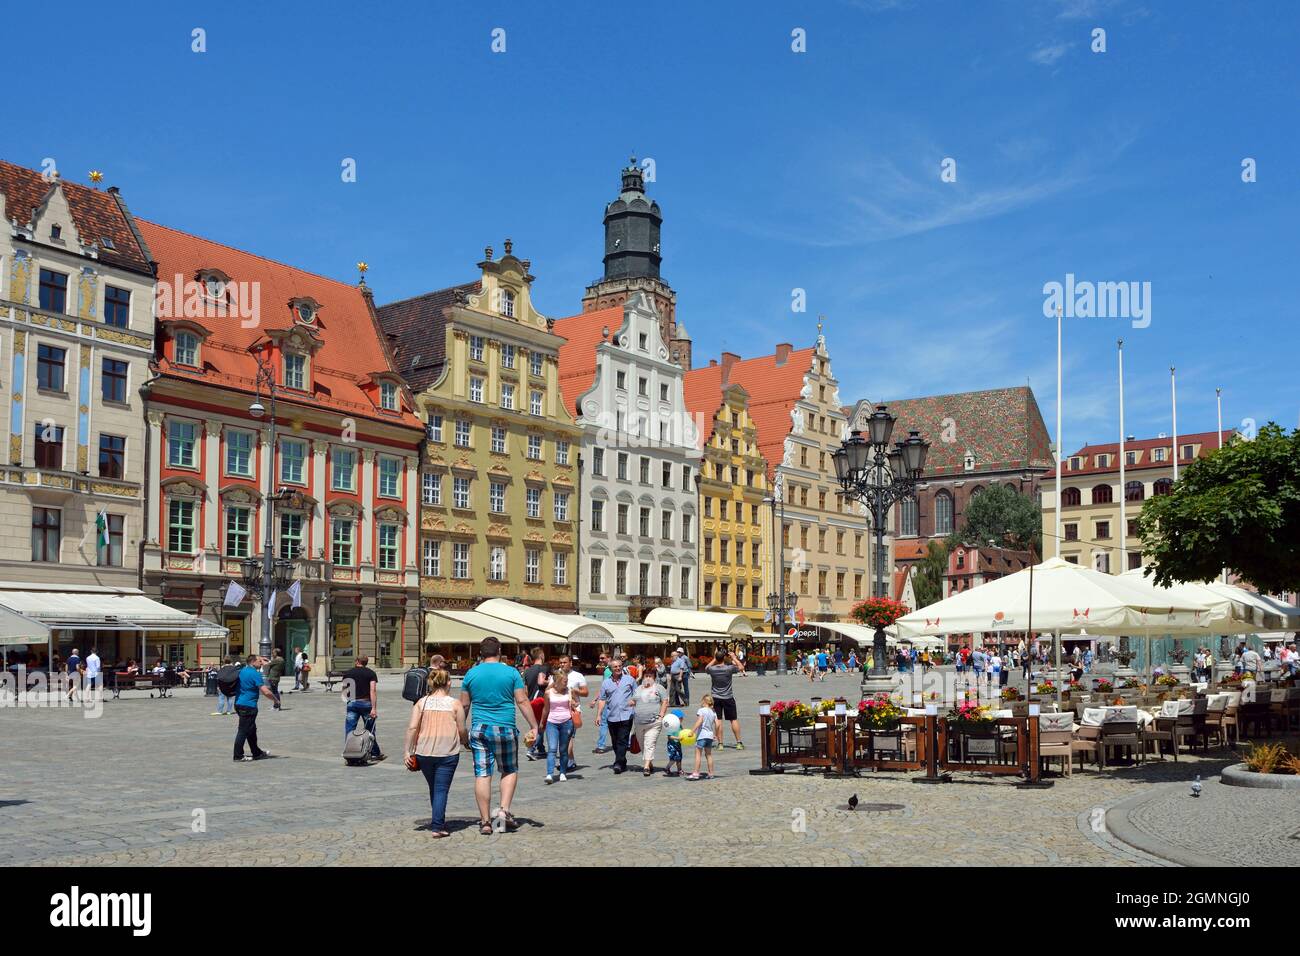 Wrocław, bassa Slesia, Polonia - 19 giugno 2016: Peoplewalking nella piazza del mercato nella storica città vecchia di Breslavia in Polonia. Foto Stock